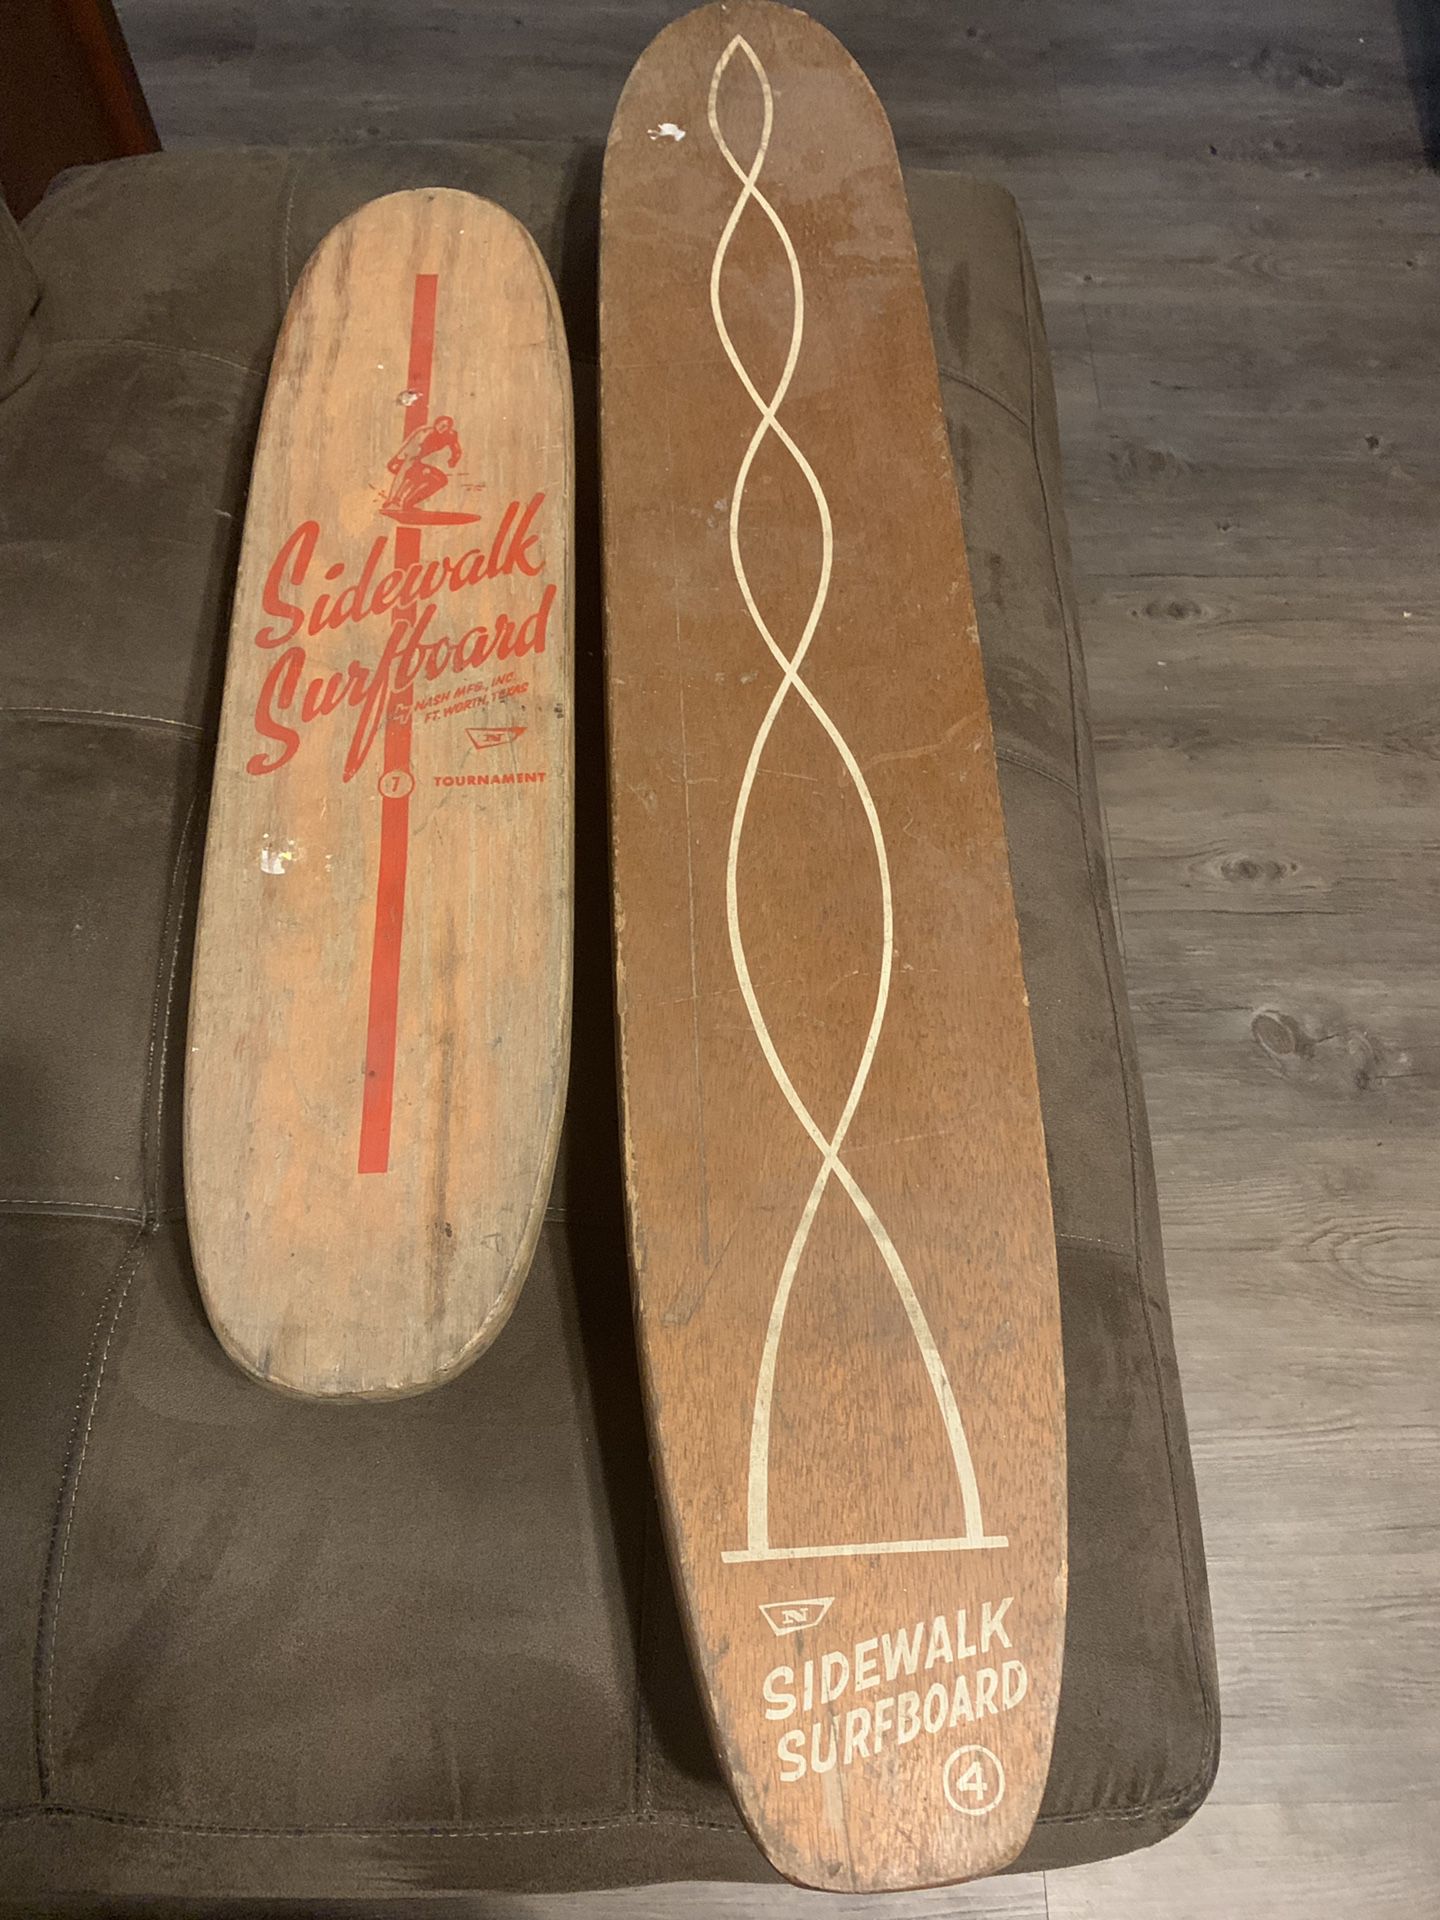 2 Nash skate boards